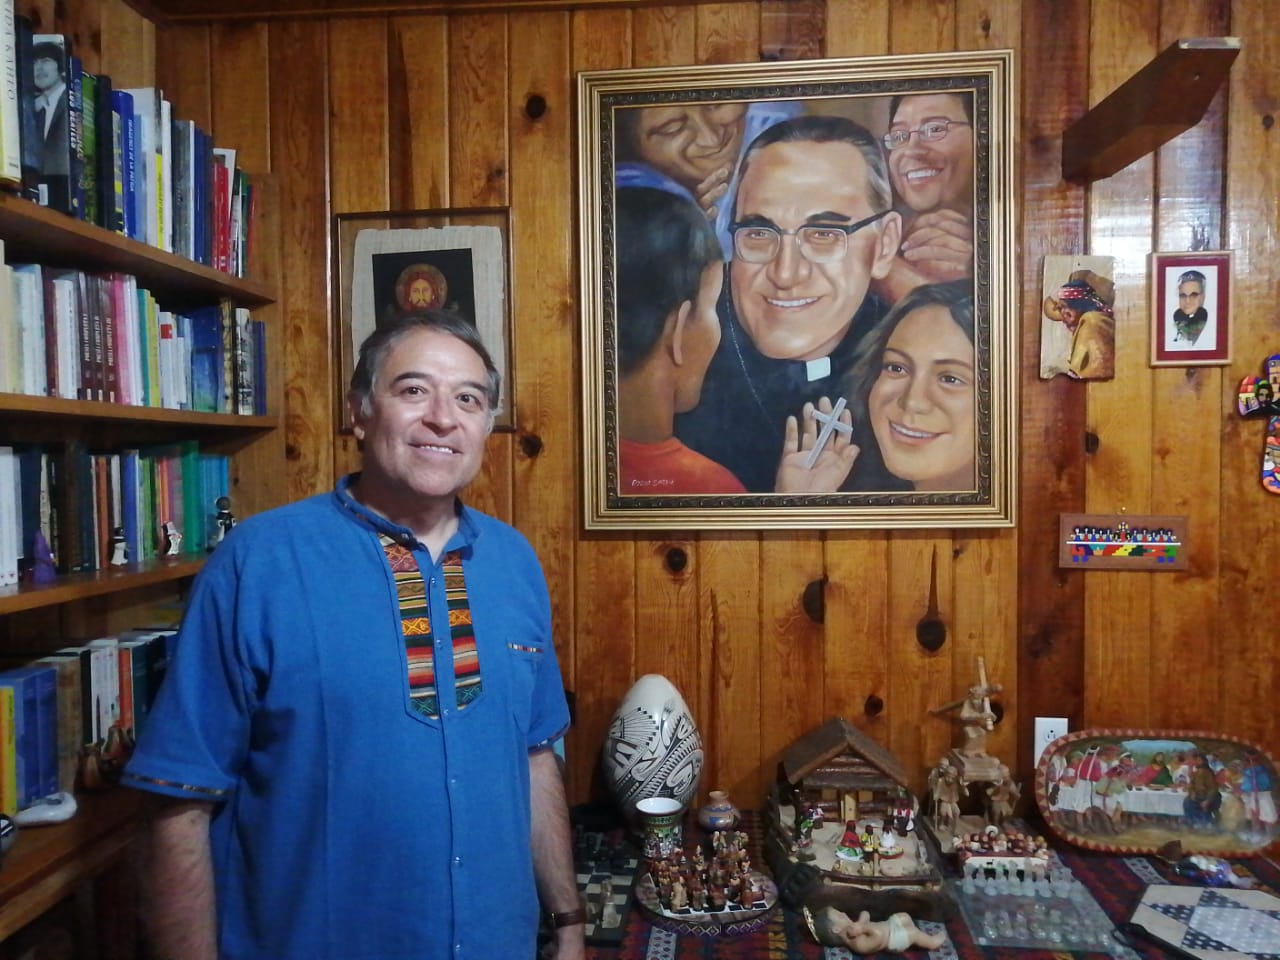 Hacen falta lágrimas para llorar tanto dolor / Una conversación con el Padre Héctor Martínez, misionero en la Tarahumara